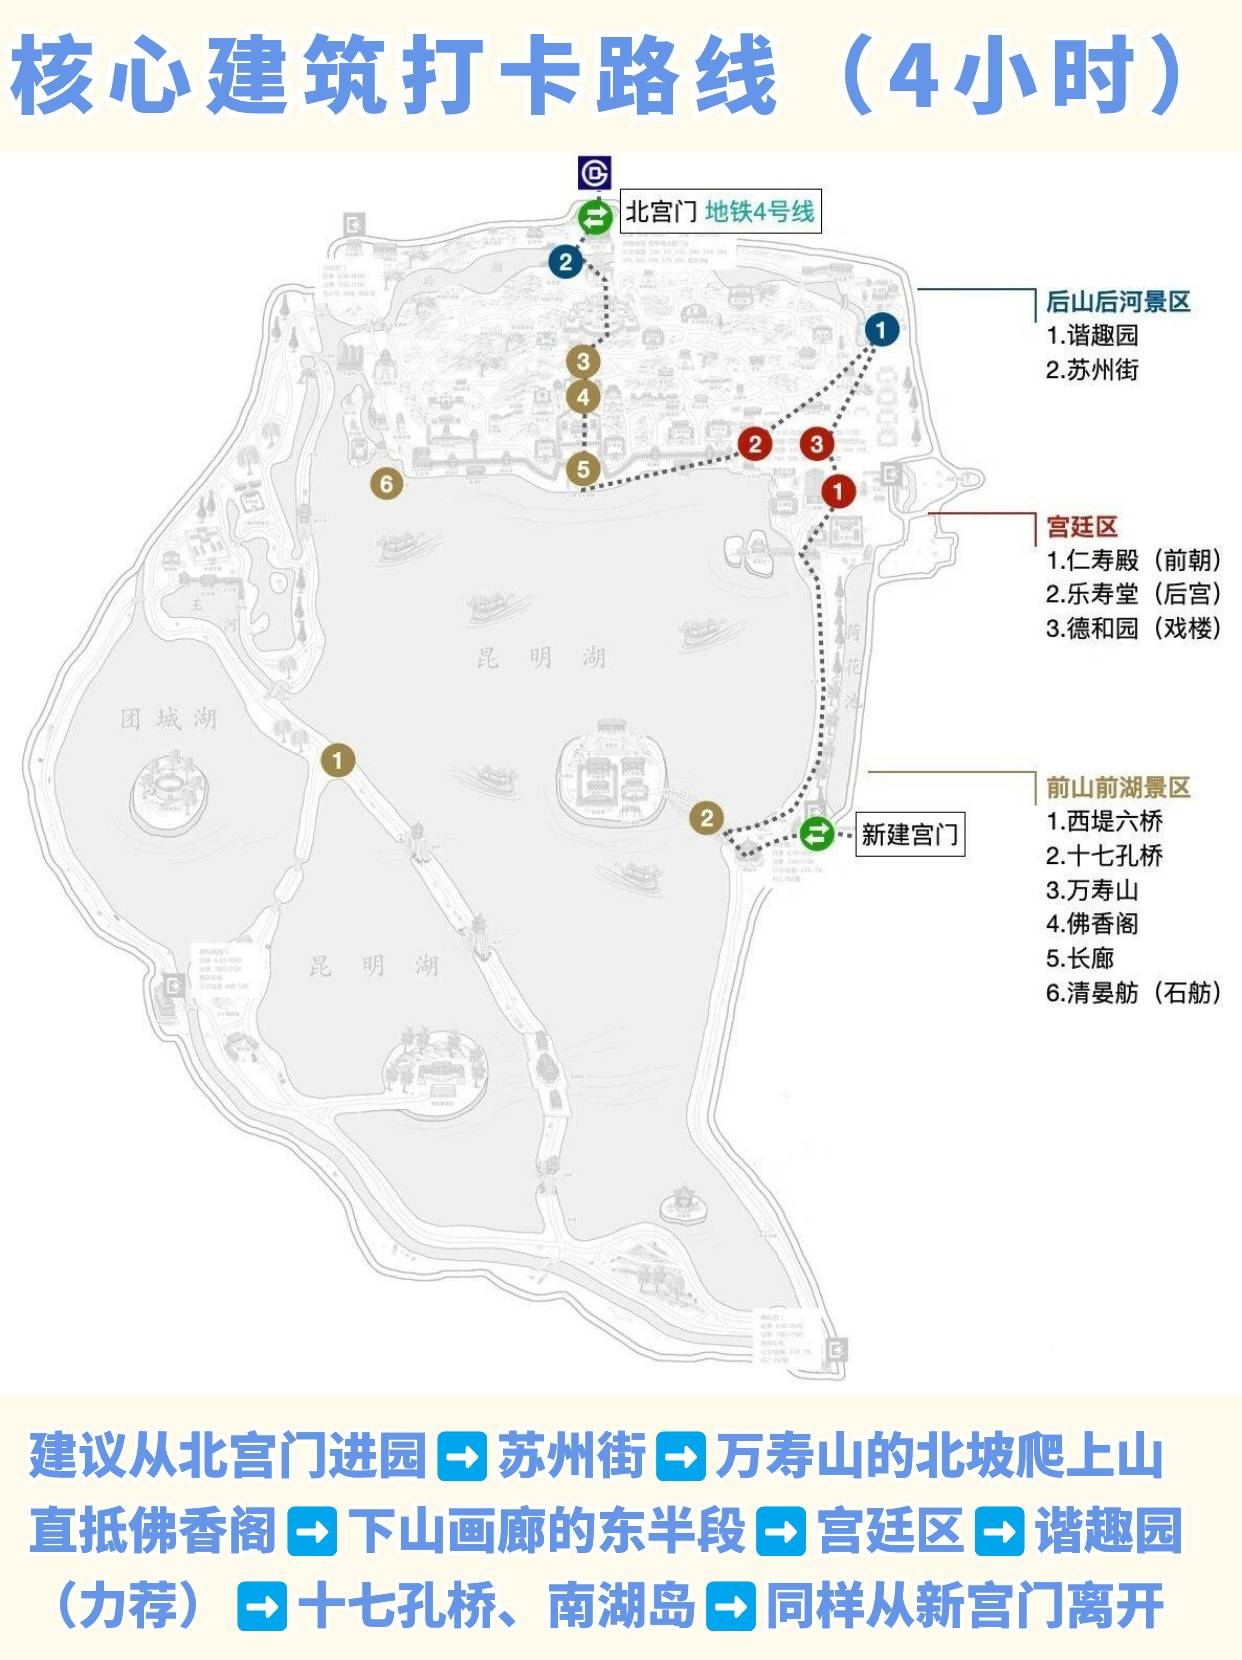 北京颐和园游览路线图片